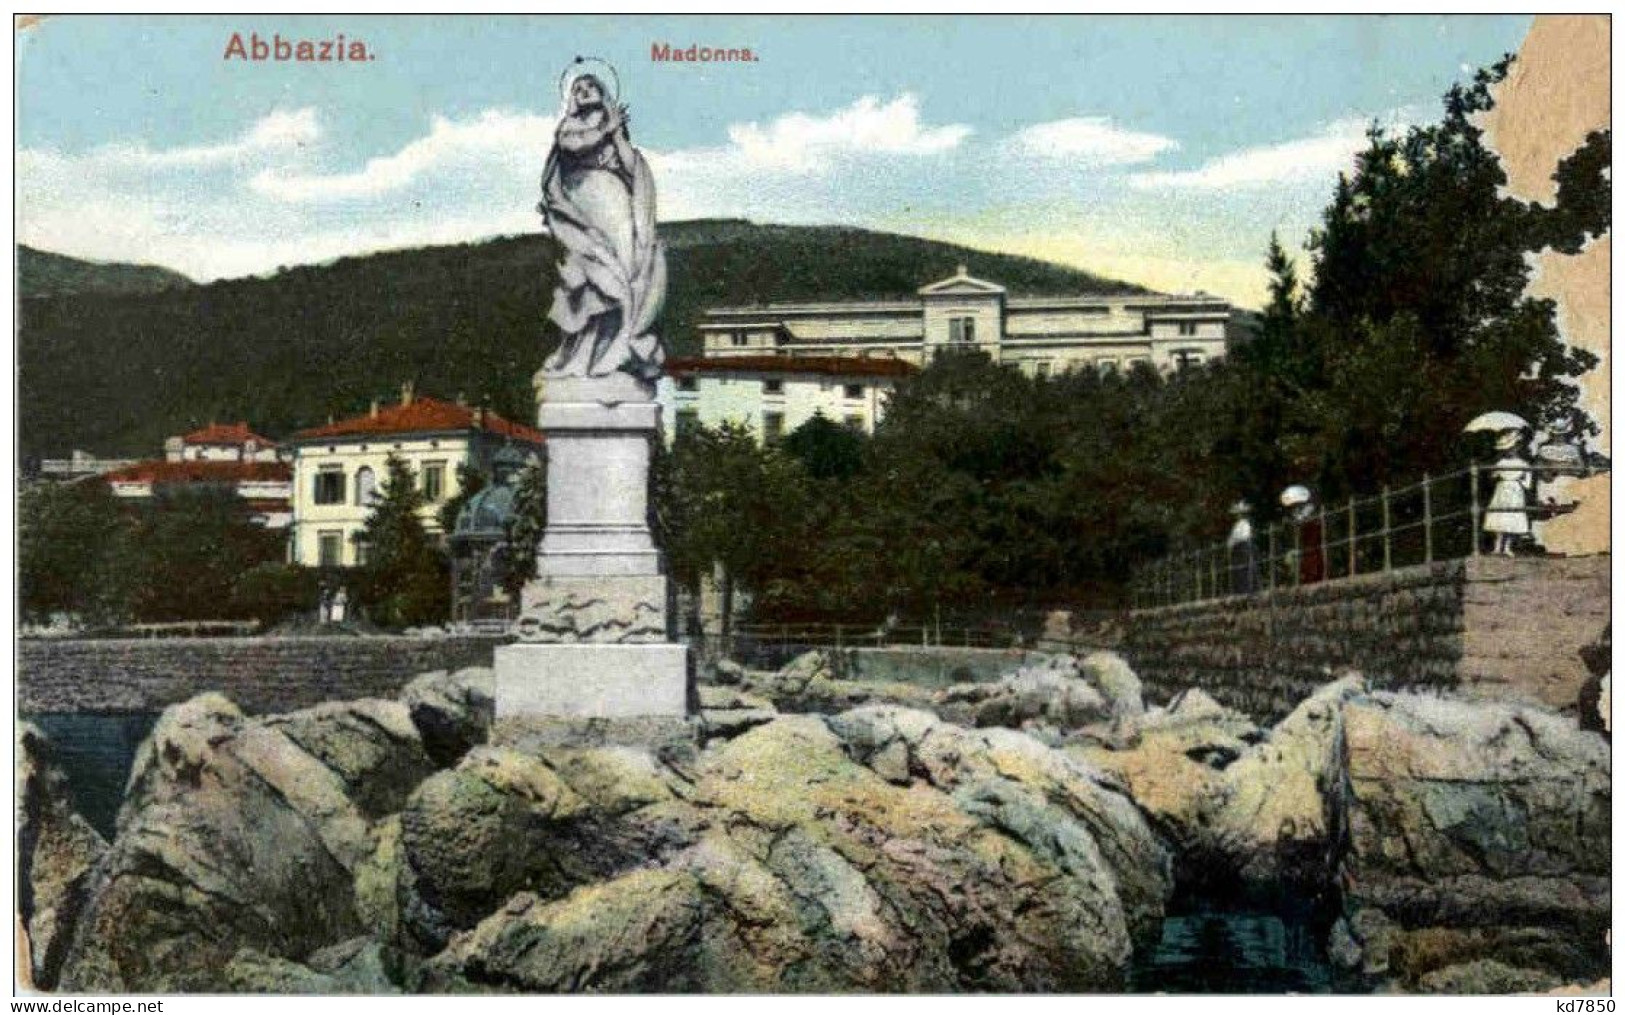 Abbazia - Madonna - Croazia